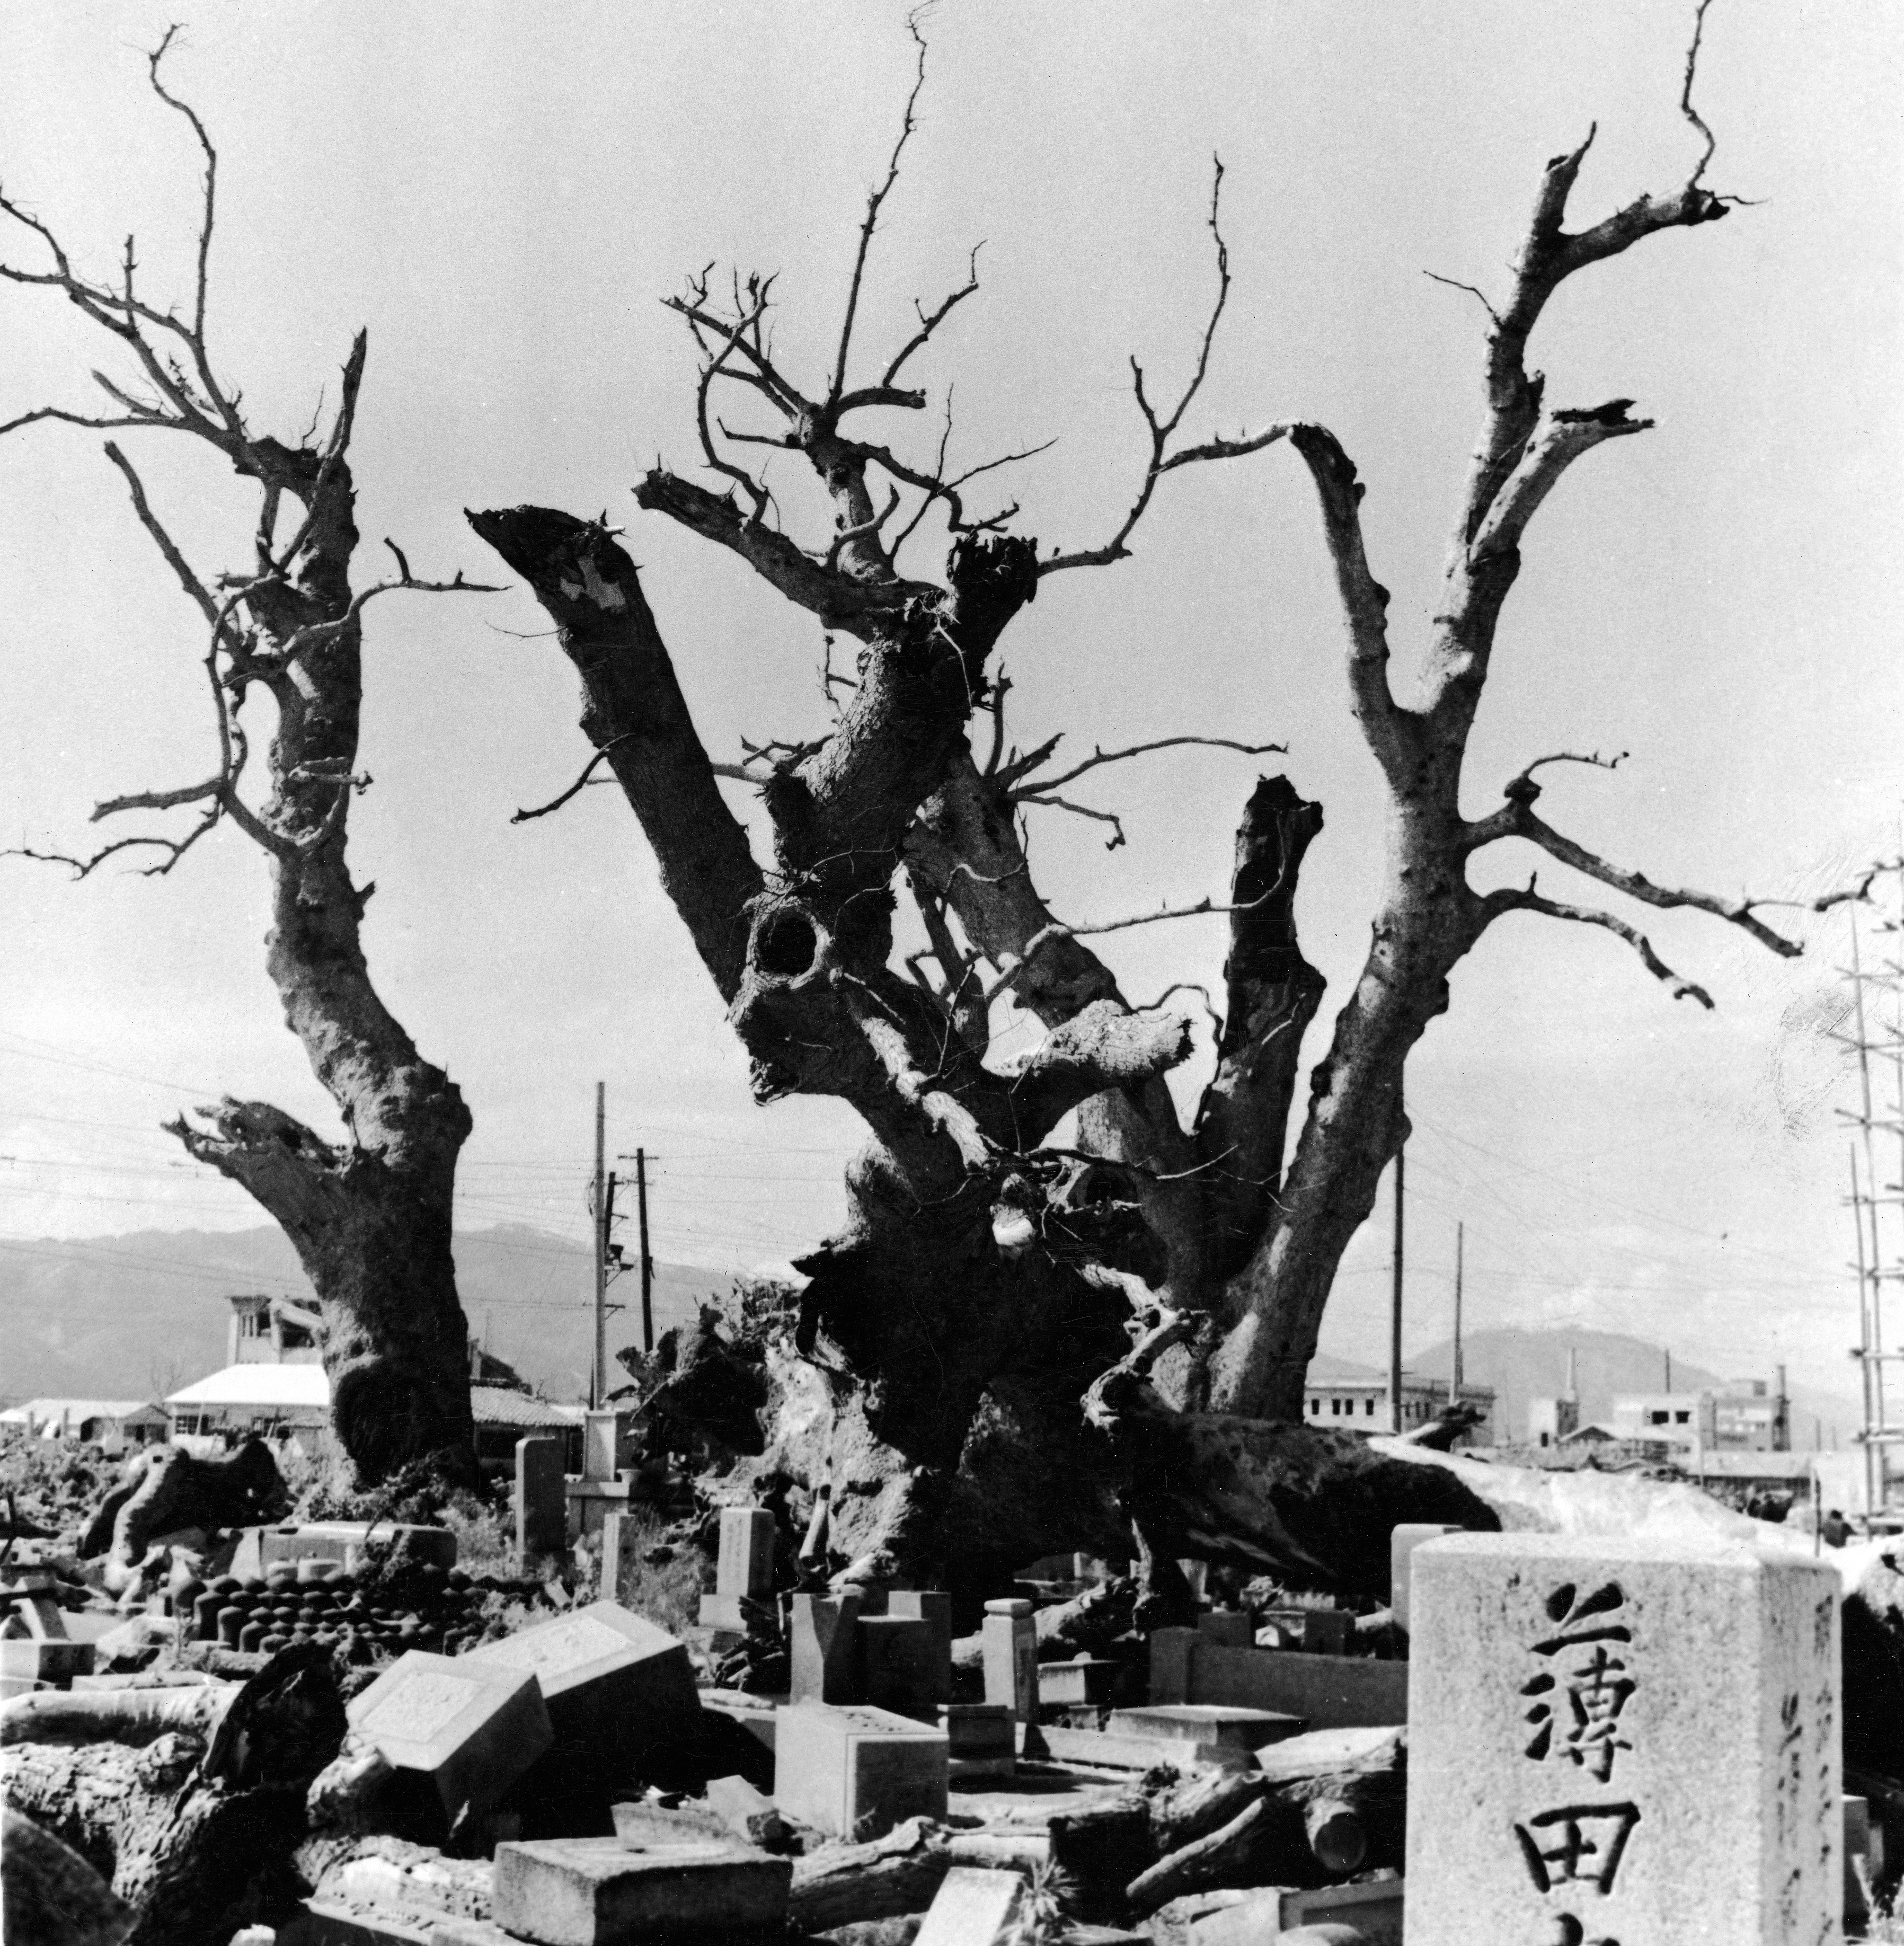 Америка сбросила бомбы на японию. Япония 1945 Хиросима и Нагасаки. Япония после Хиросимы и Нагасаки. Хиросима и Нагасаки после взрыва. Хиросима и Нагасаки люди после бомбардировки.